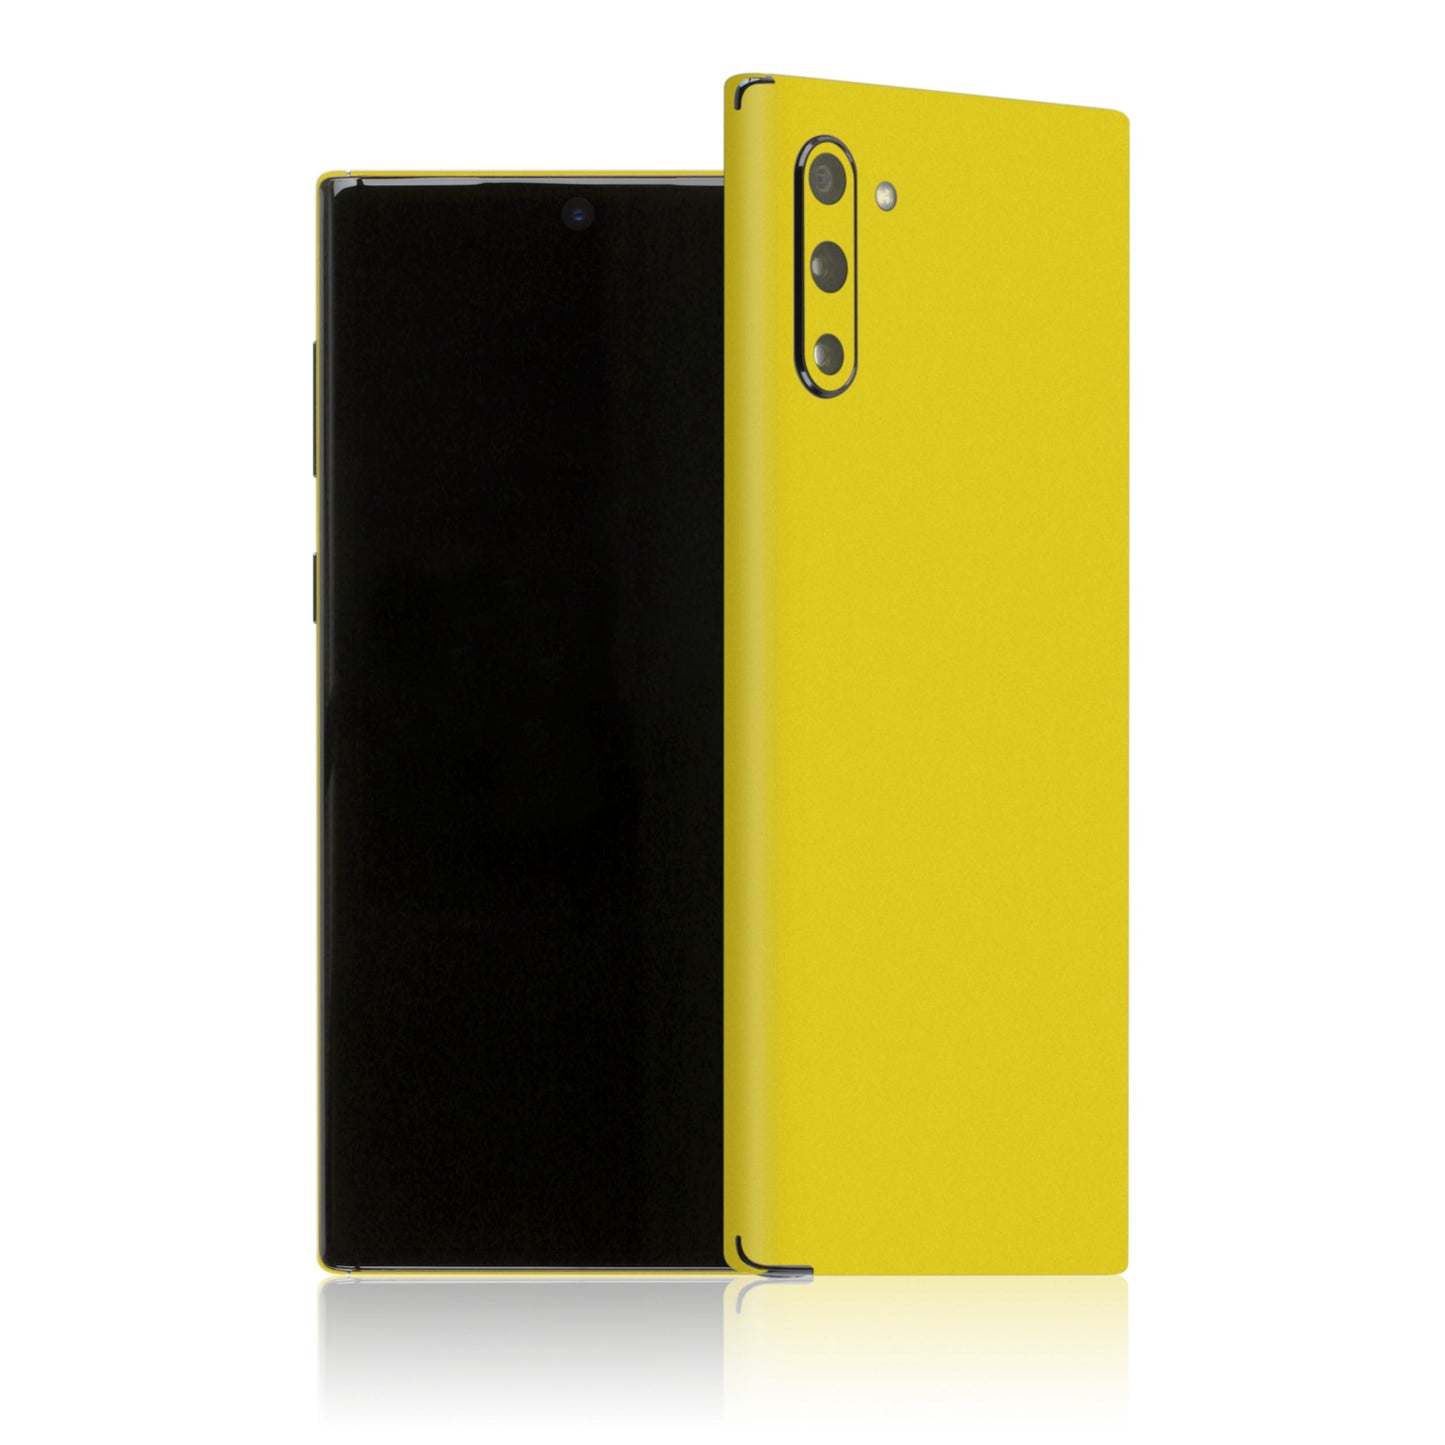 Galaxy Note 10 - Color Edition